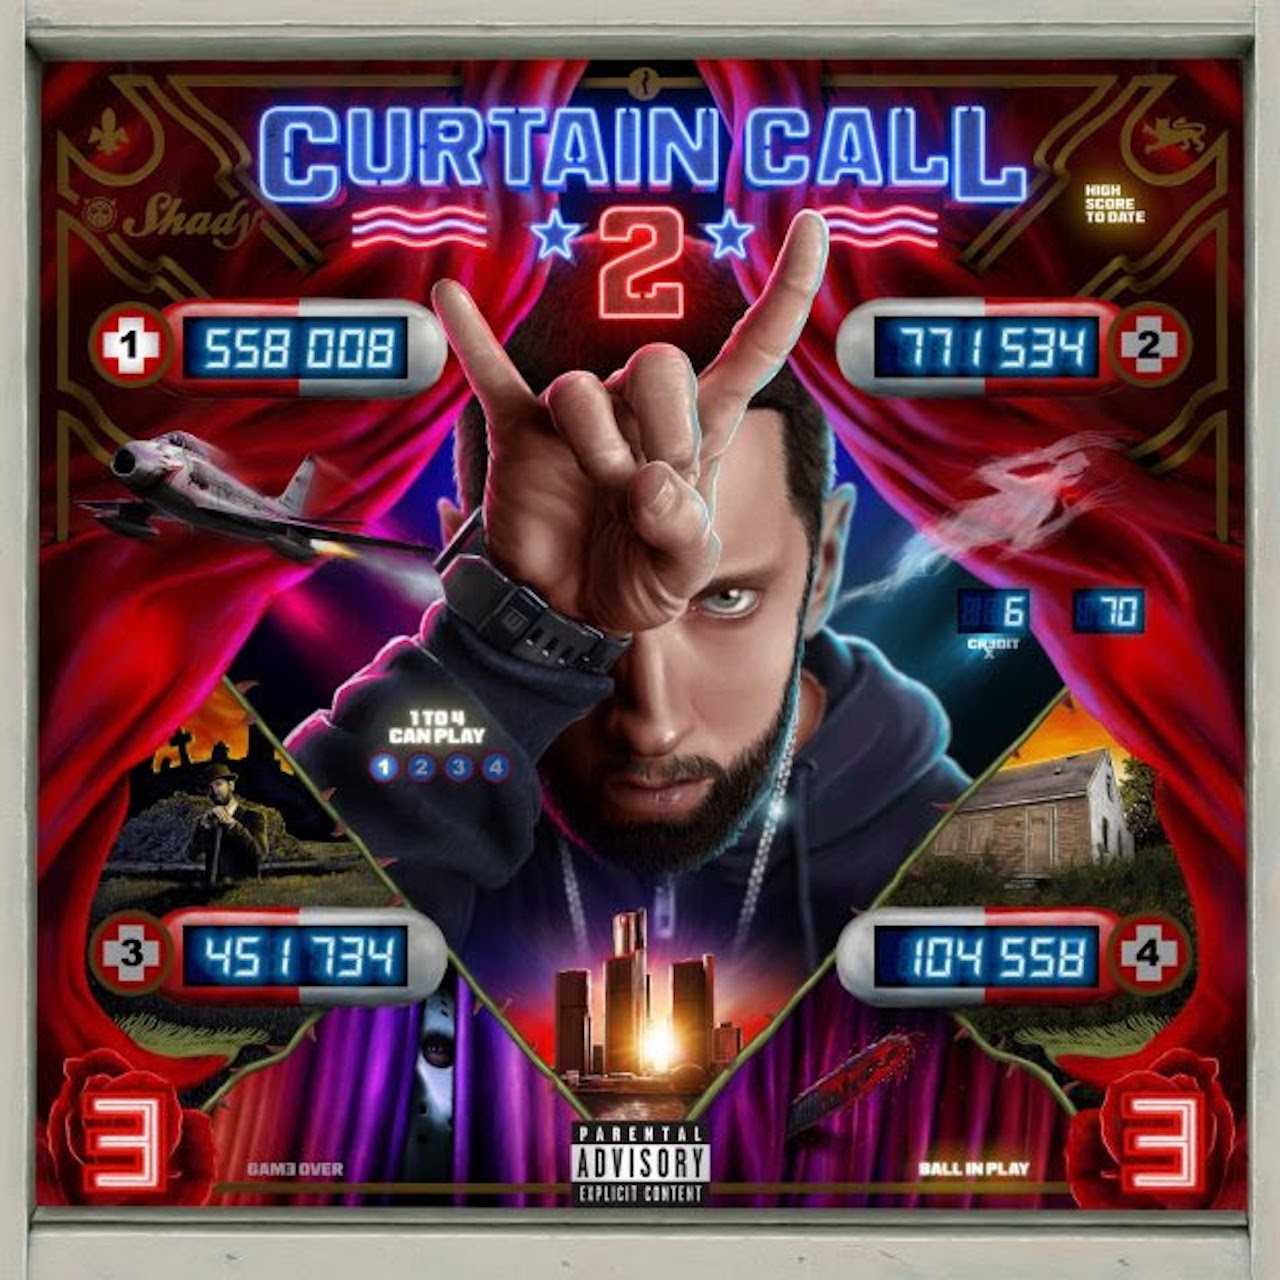 Eminem curtain call 2 album artwork Image: udiscovermusic.com